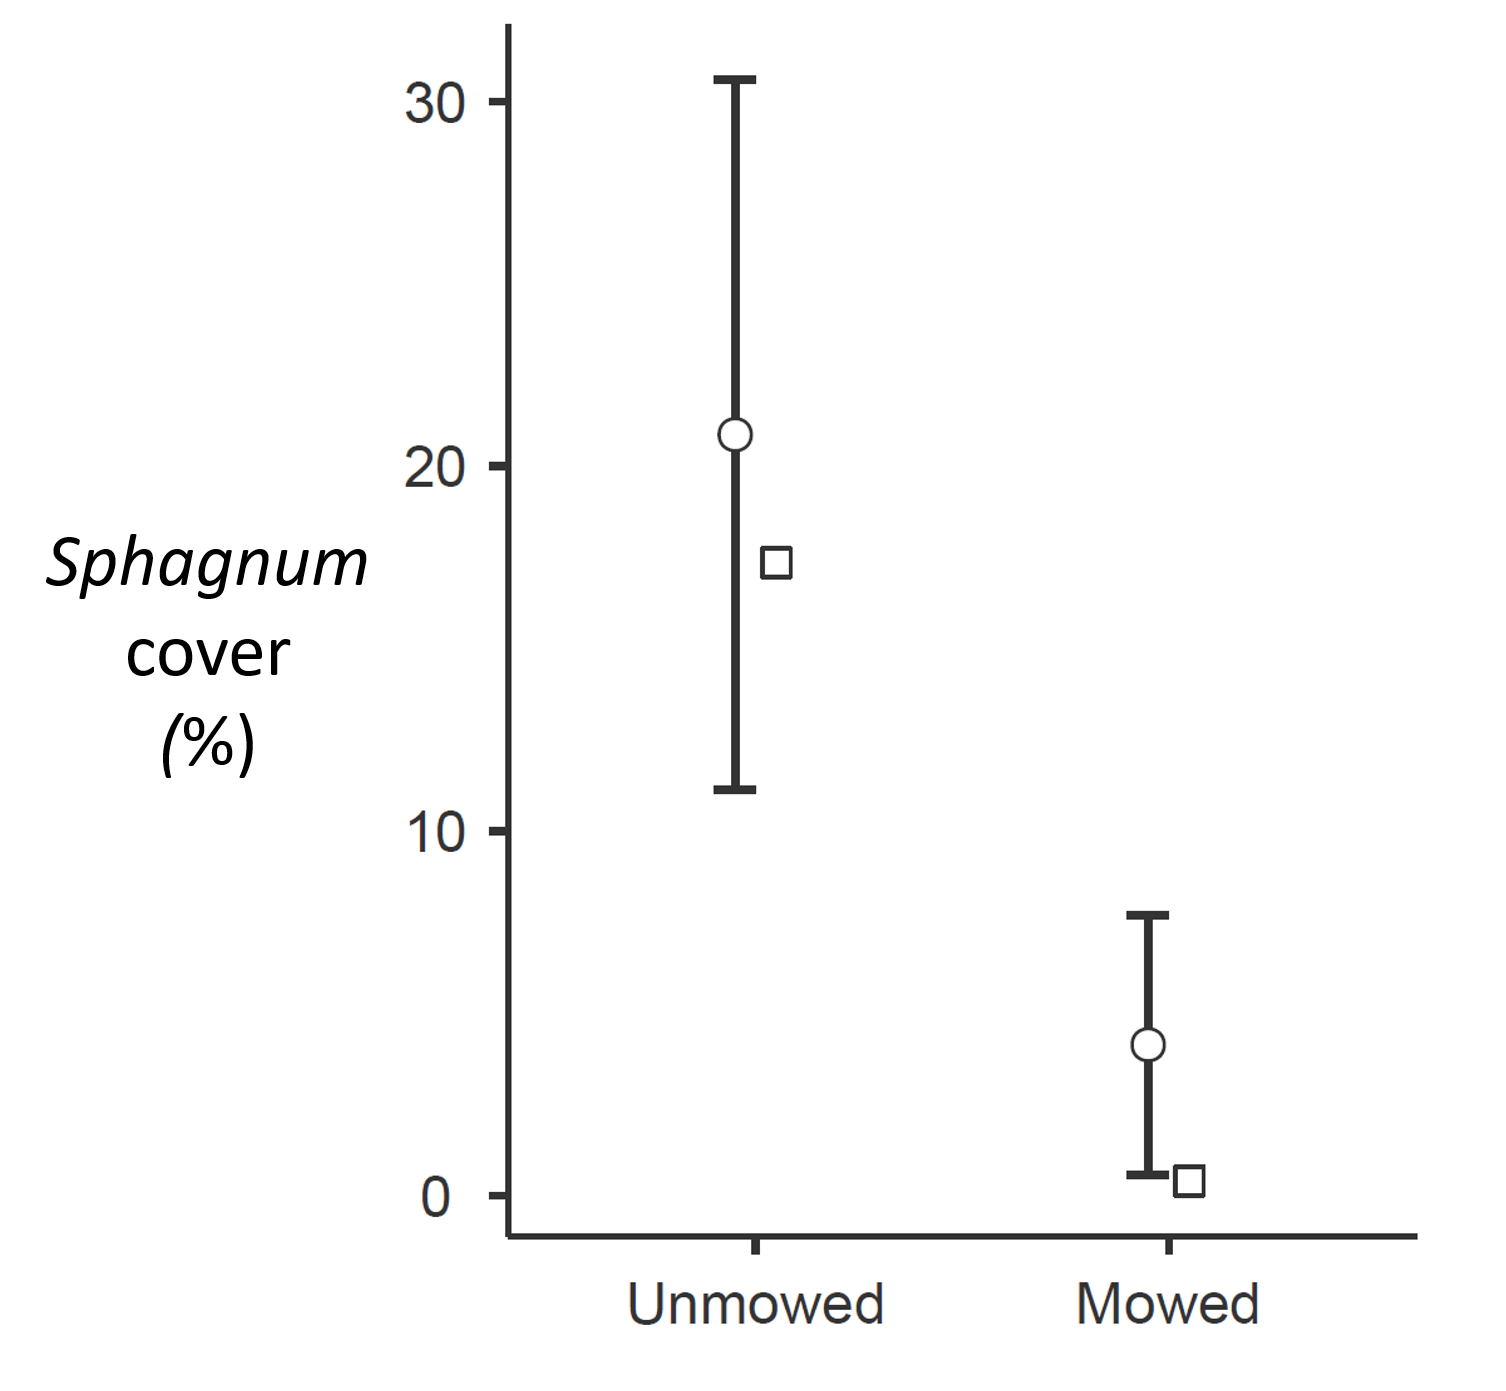 Sphagnum cover in mowed and unmowed plots